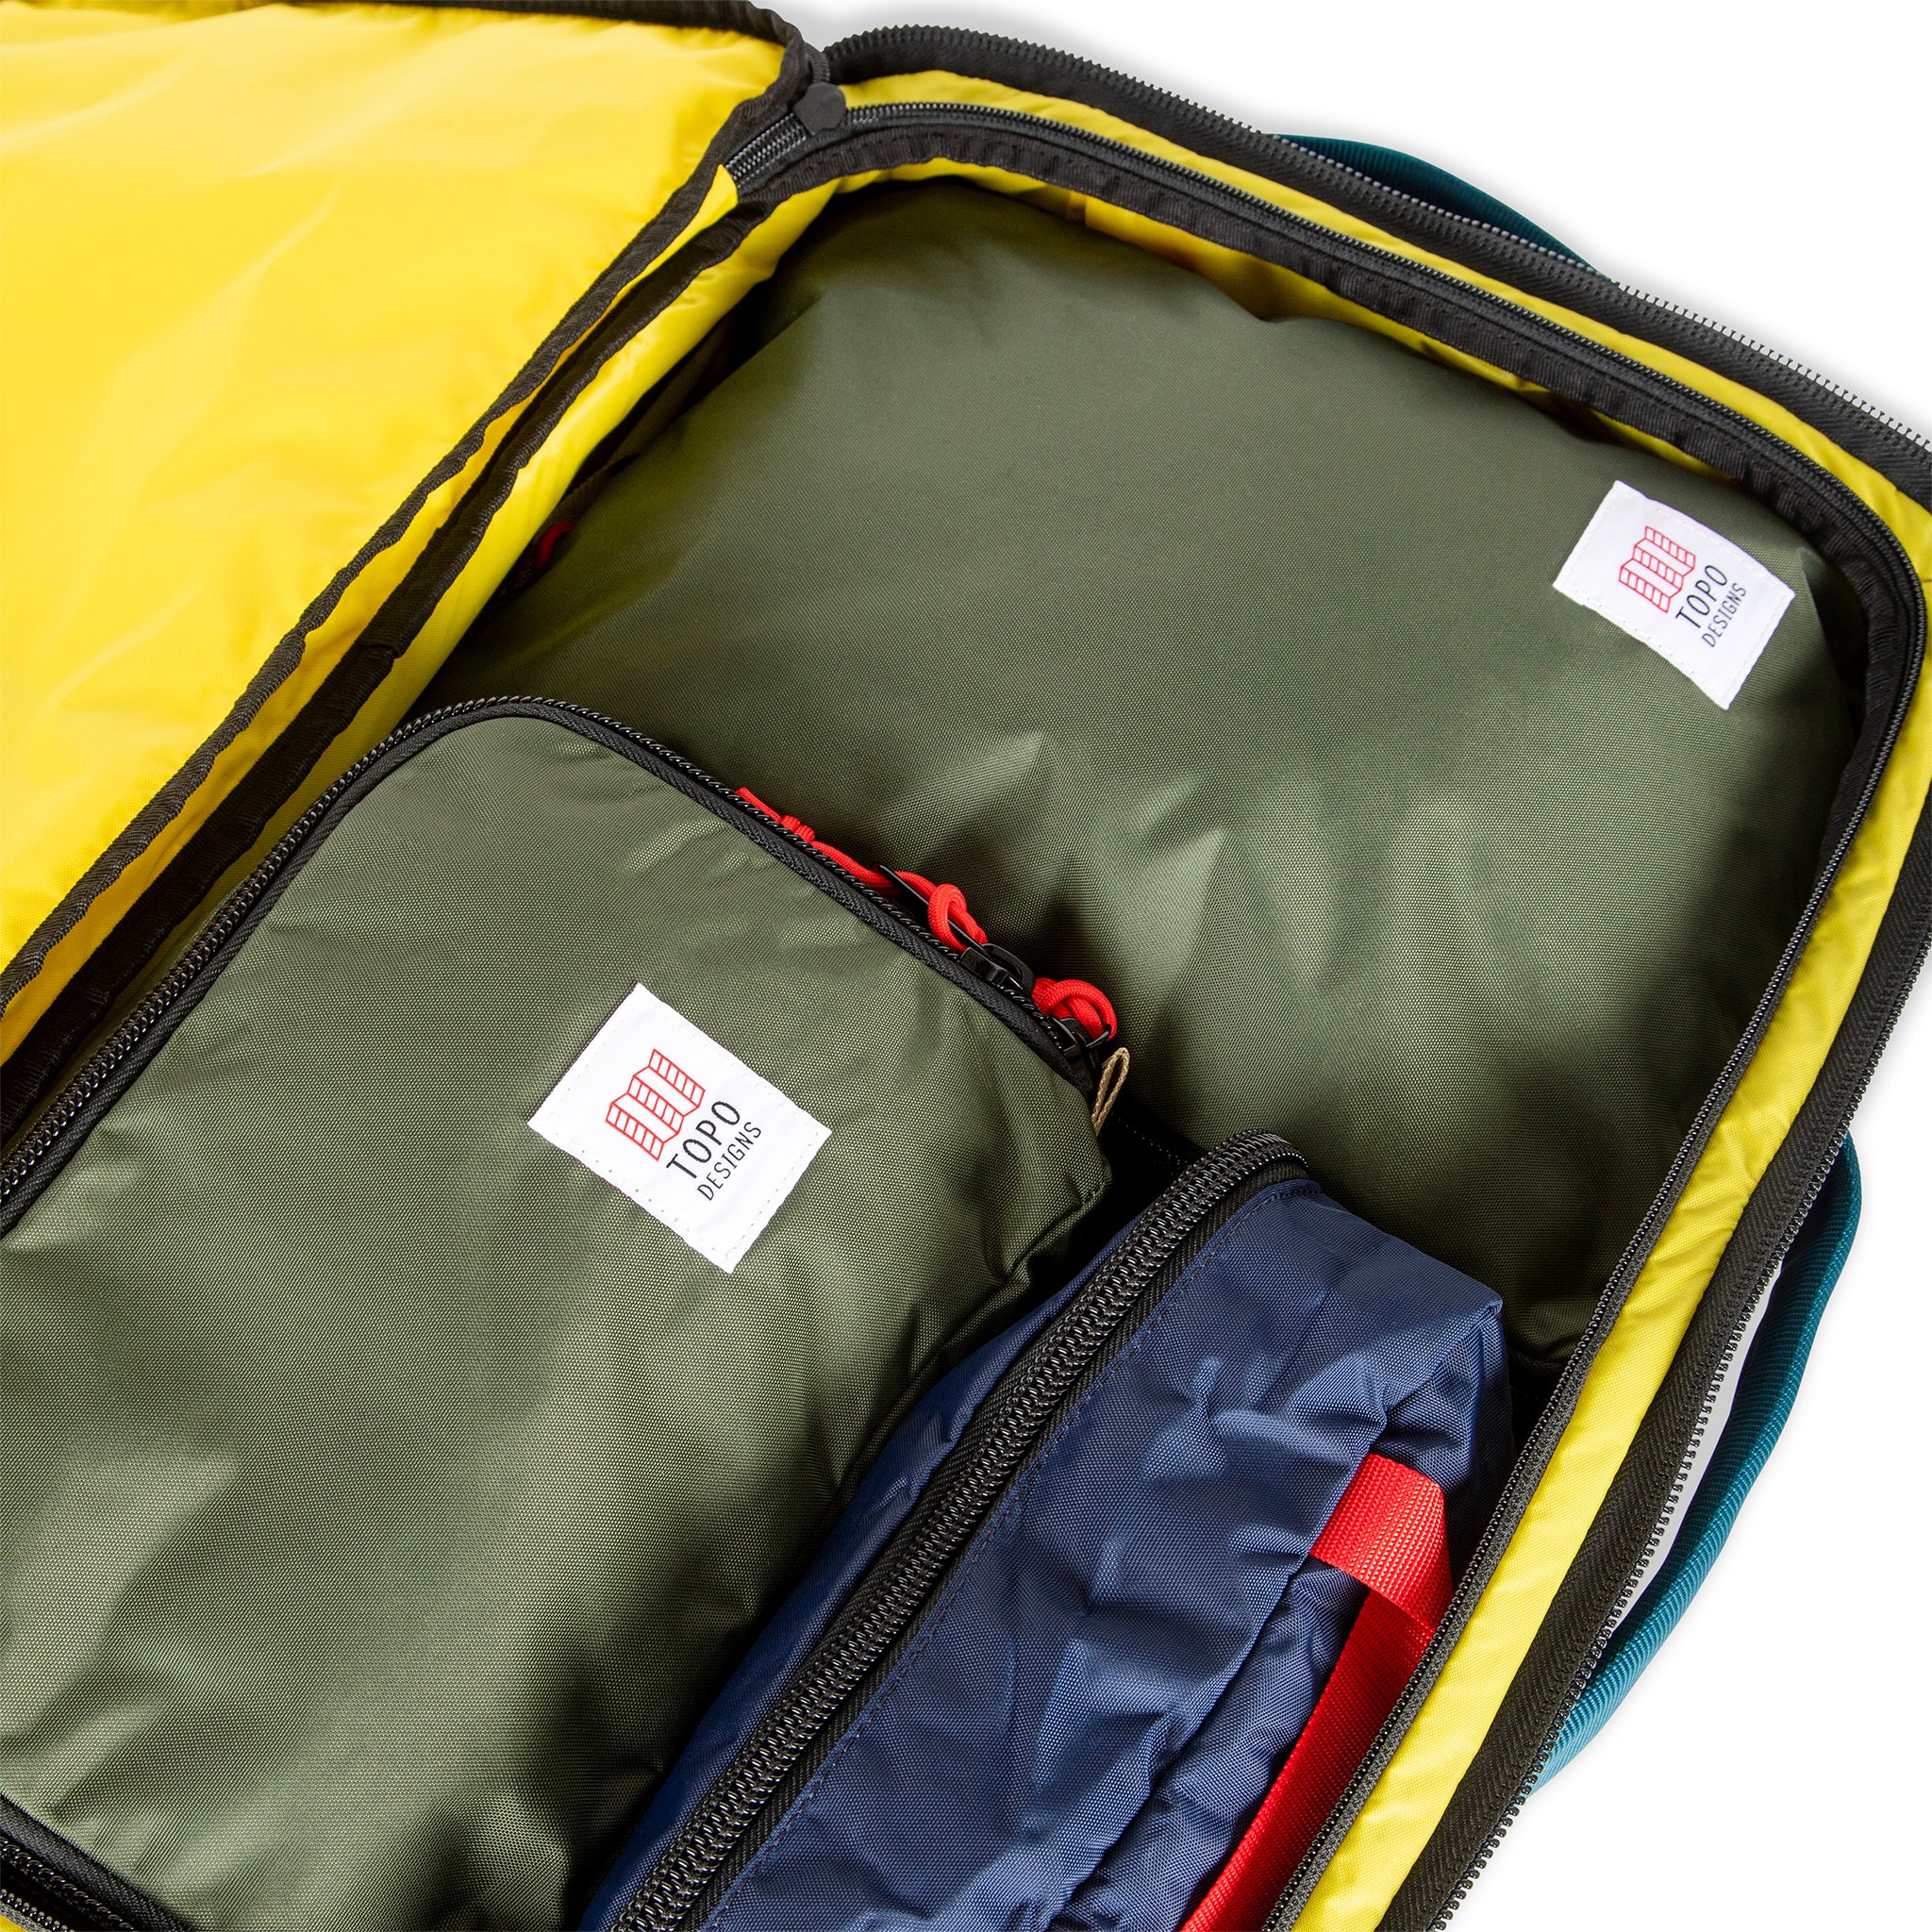 Topo Designs Global Travel Bag Roller - Black/Black